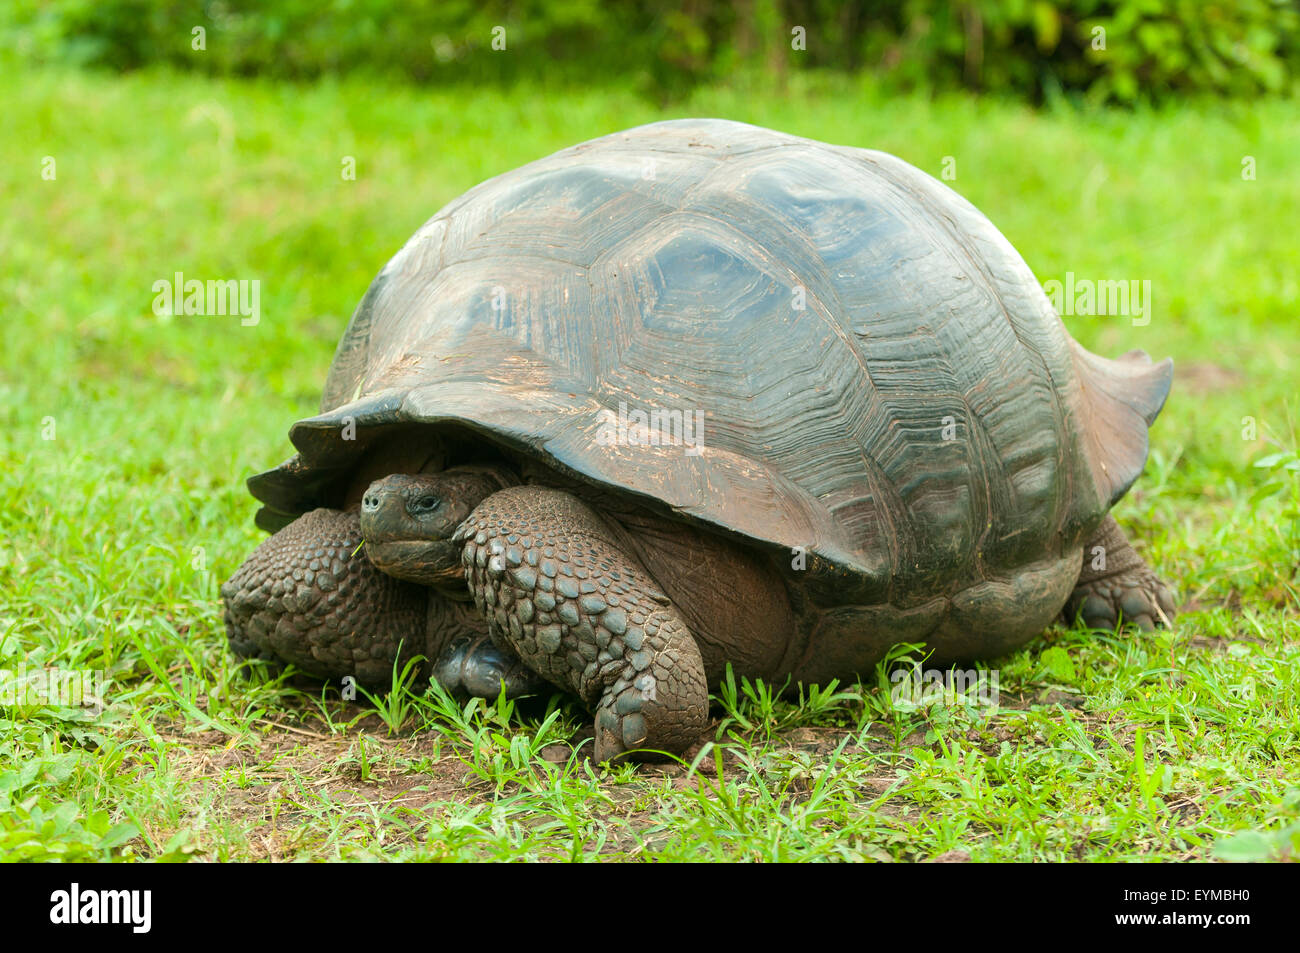 Giant Tortoise at Santa Cruz Highlands, Galapagos Islands, Ecuador Stock Photo